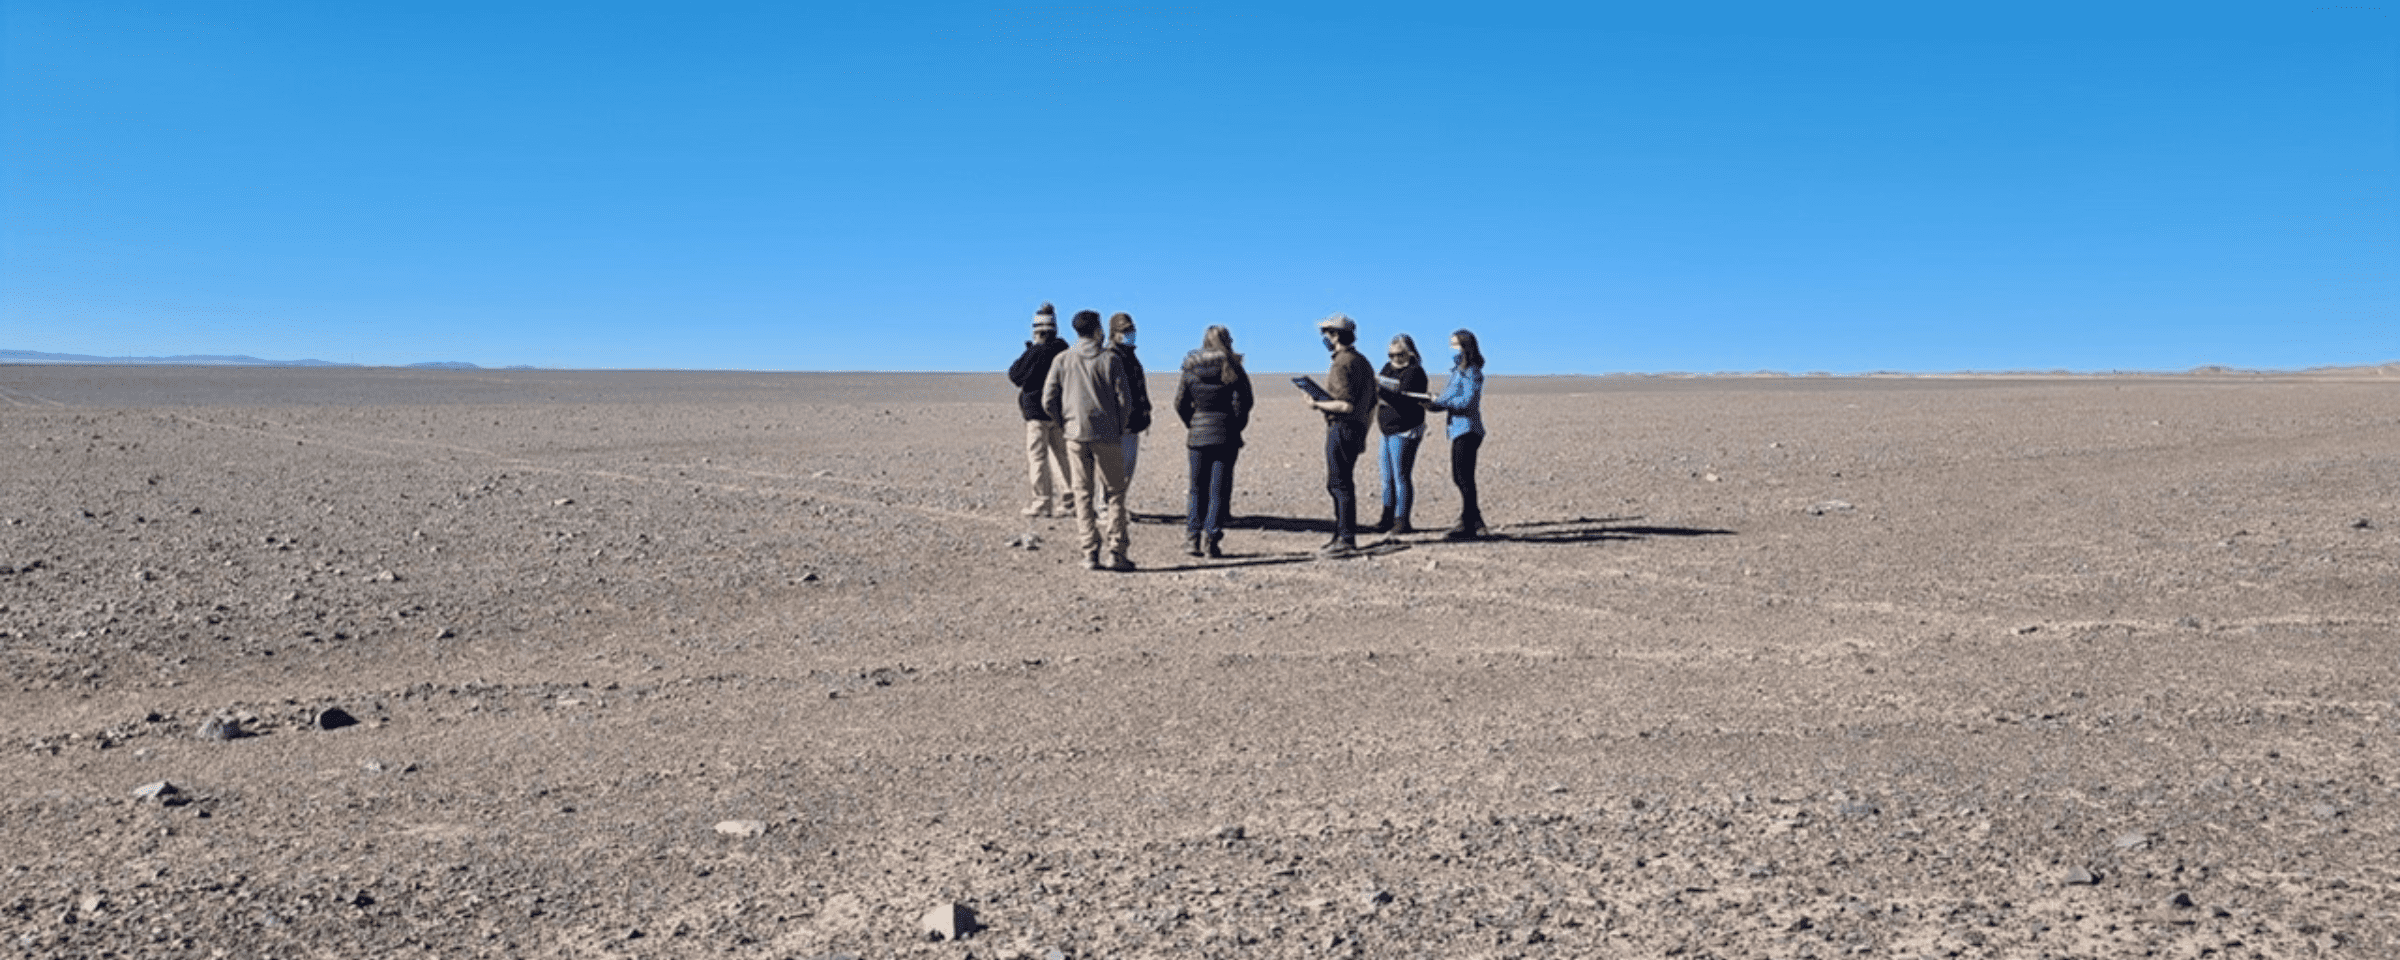 Grupo de personas en visita a terreno donde estará una planta solar